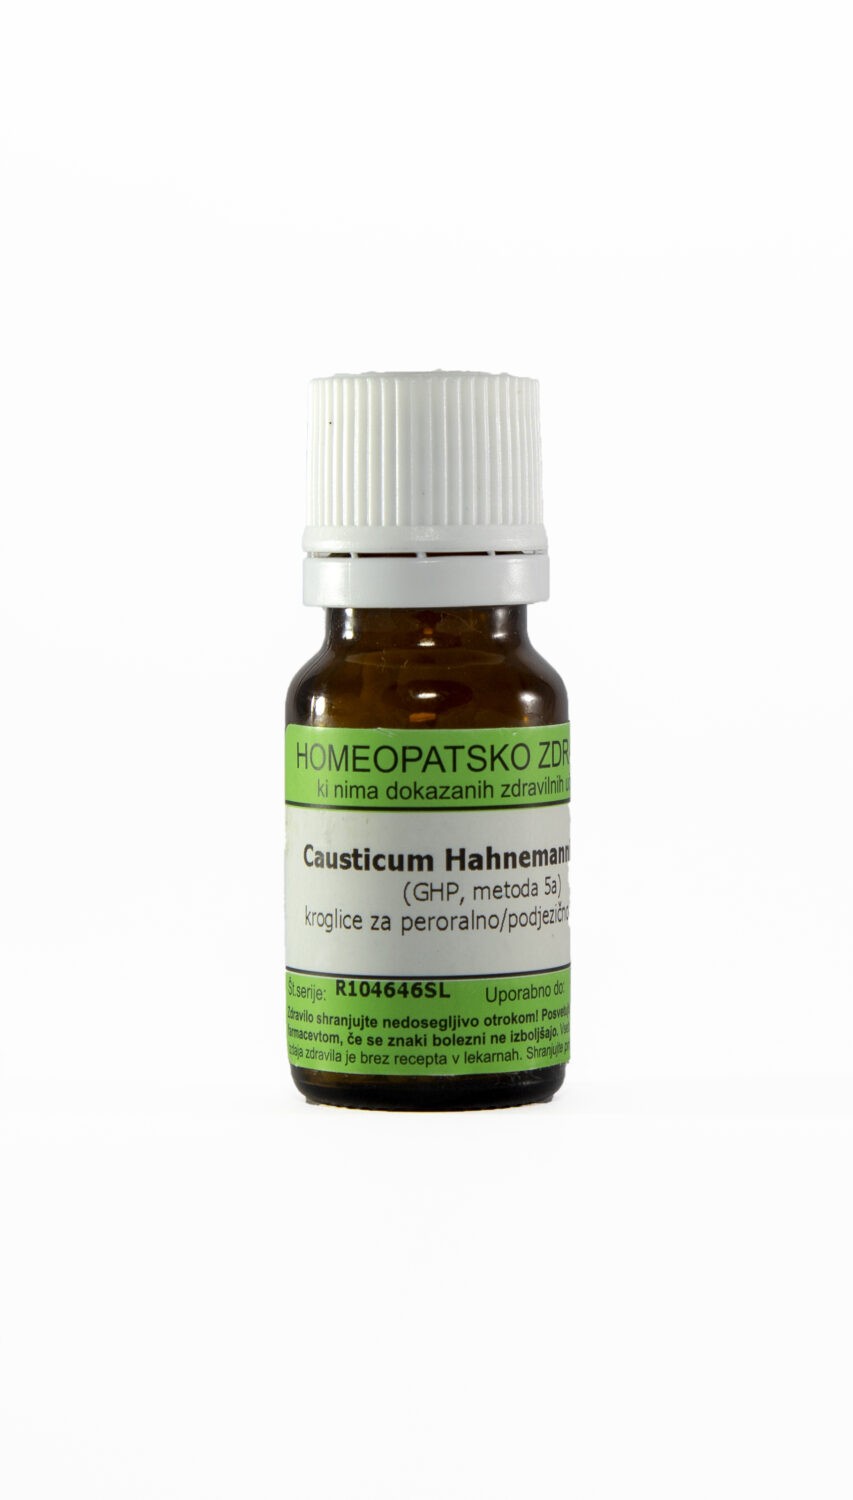 Causticum Hahnemanni C12 homeopatske kroglice, 1 g